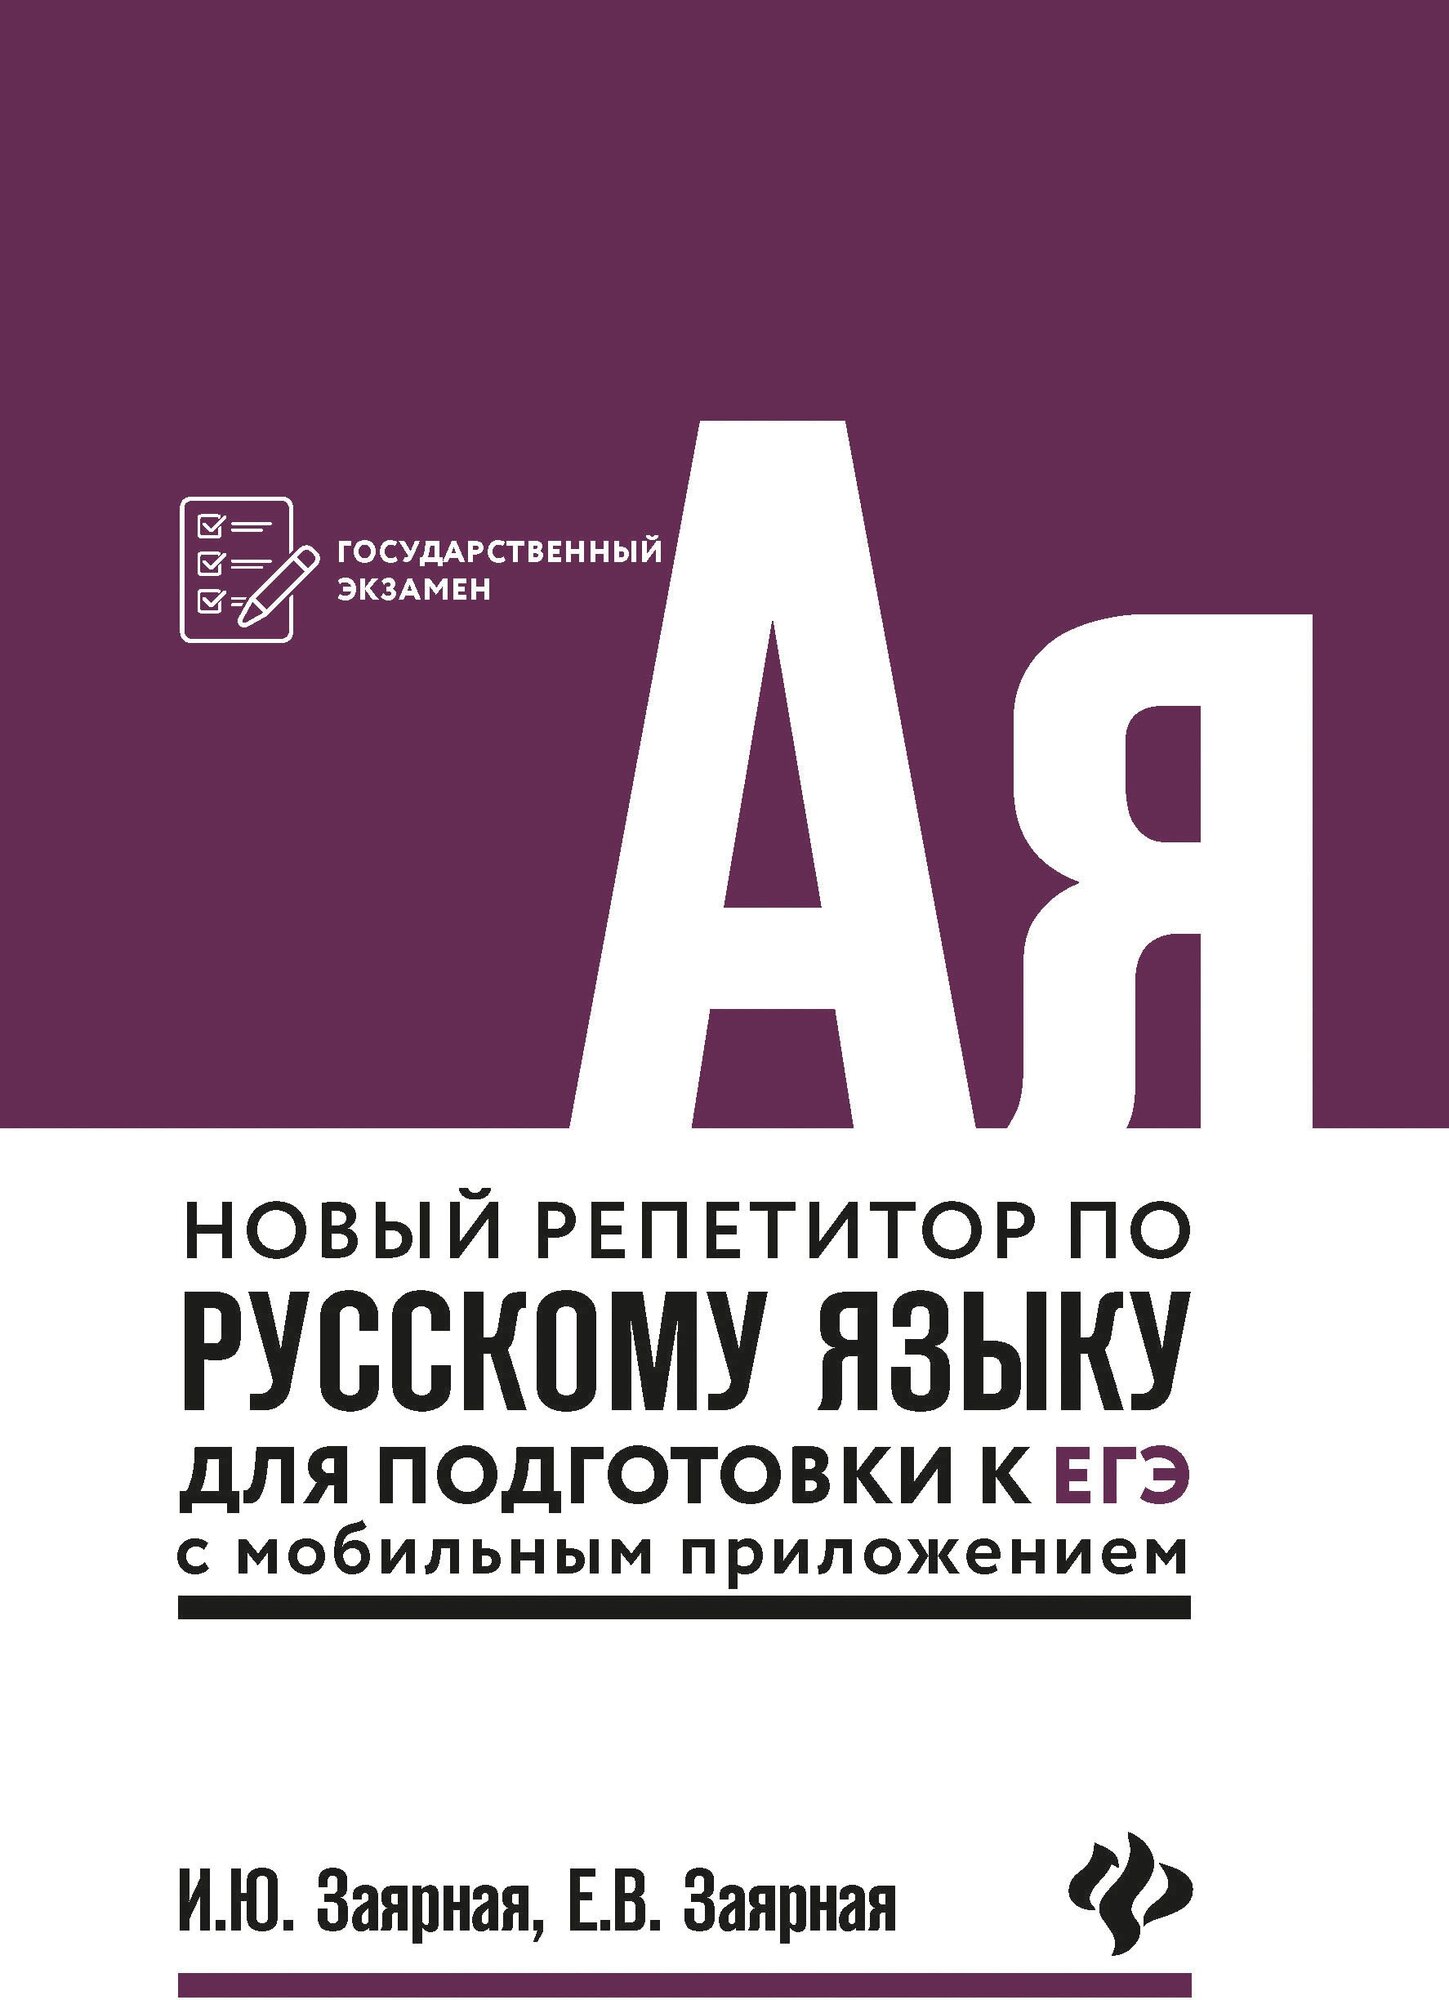 Новый репетитор по русскому языку для подготовки к ЕГЭ с мобильным приложением - фото №2